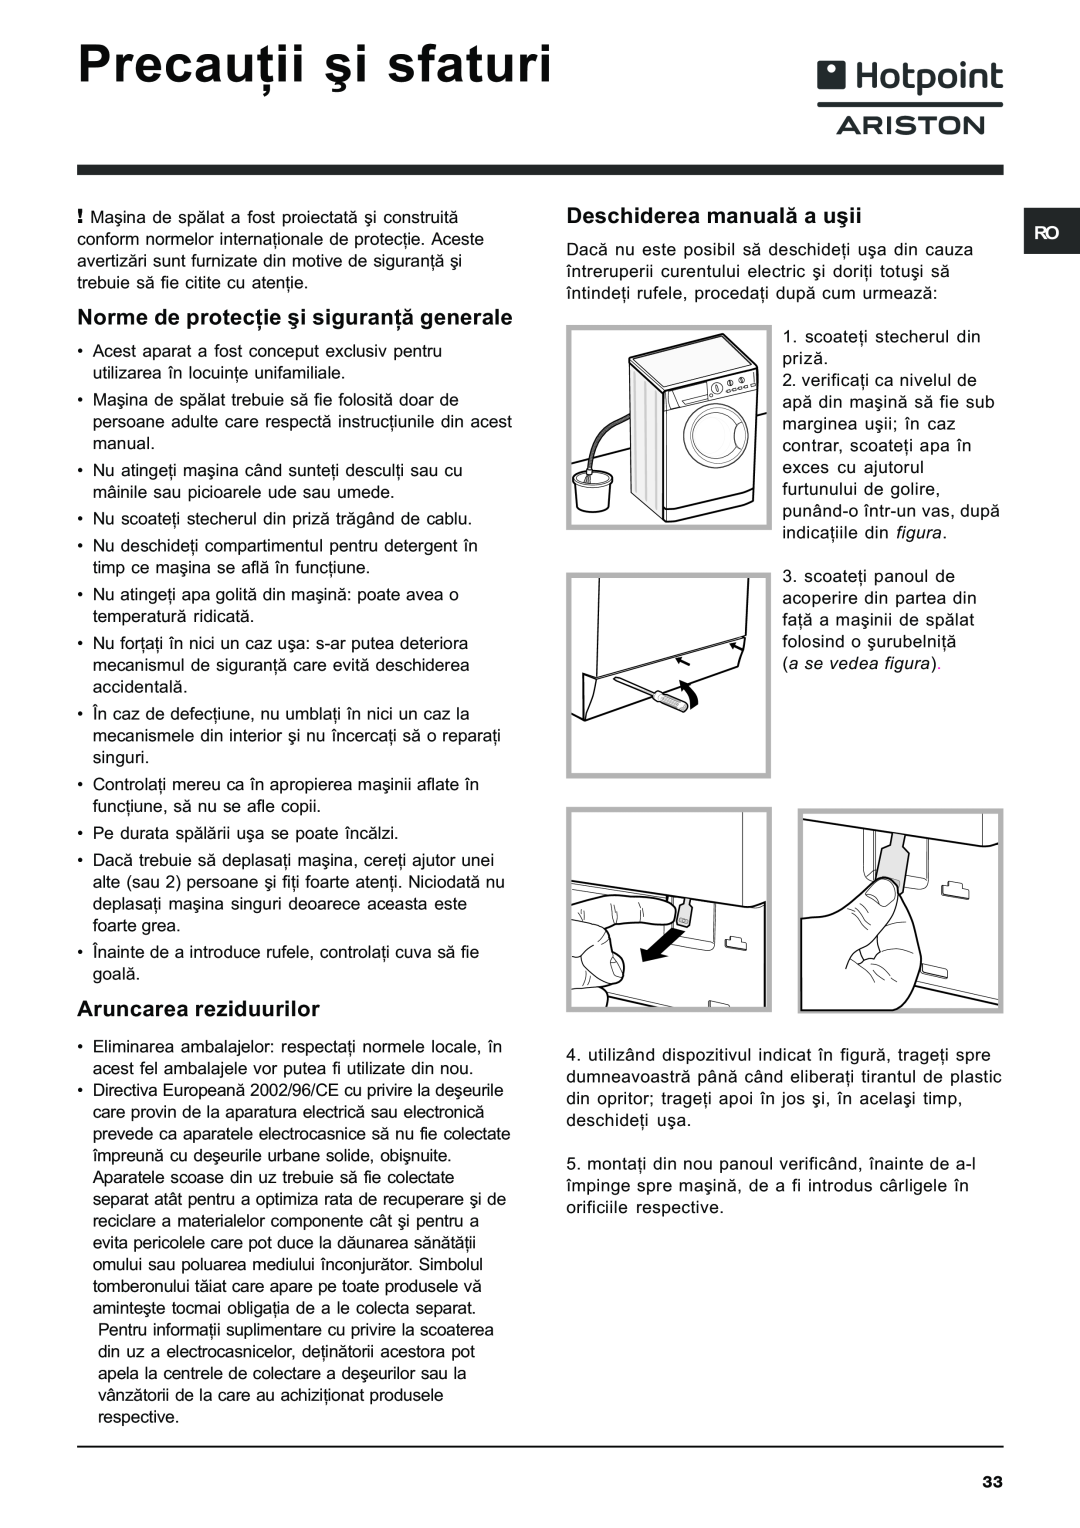 Hotpoint ARXXL105 manual Precauþii ºi sfaturi, Norme de protecþie ºi siguranþã generale, Aruncarea reziduurilor 